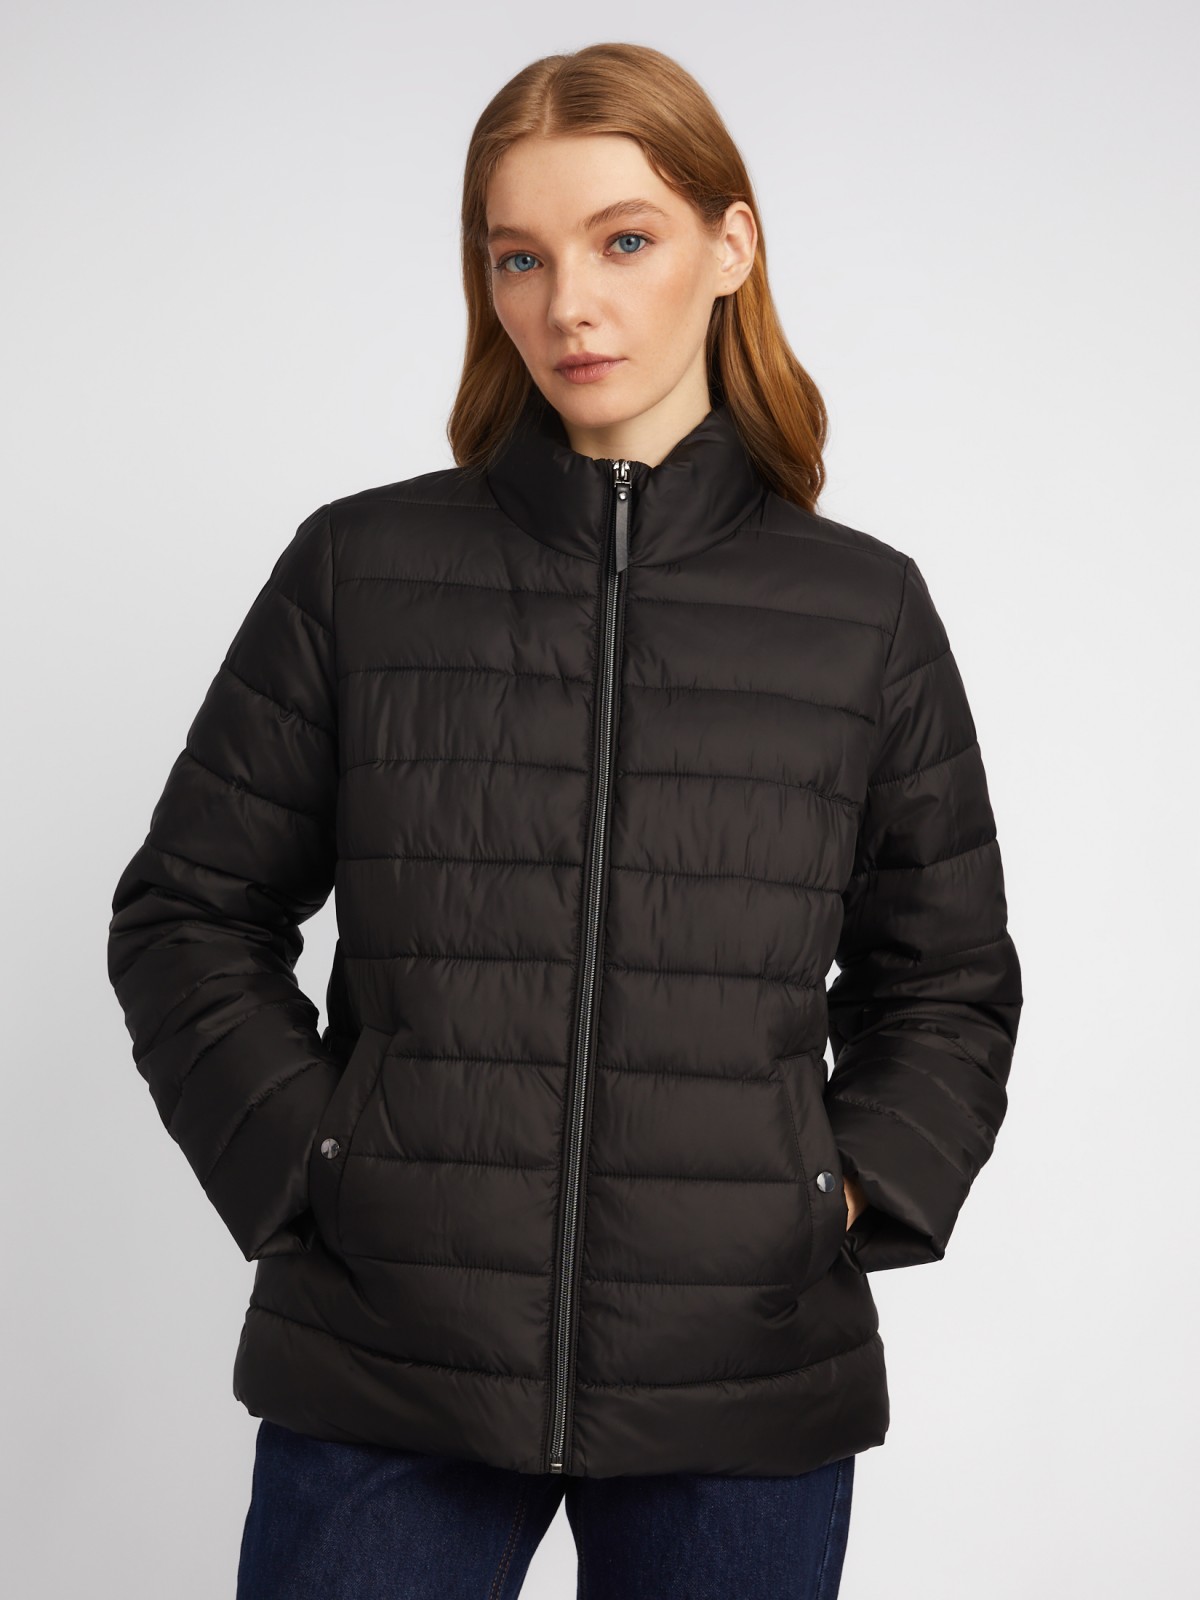 Утеплённая короткая куртка на молнии с воротником zolla 024135112154, цвет черный, размер S - фото 3